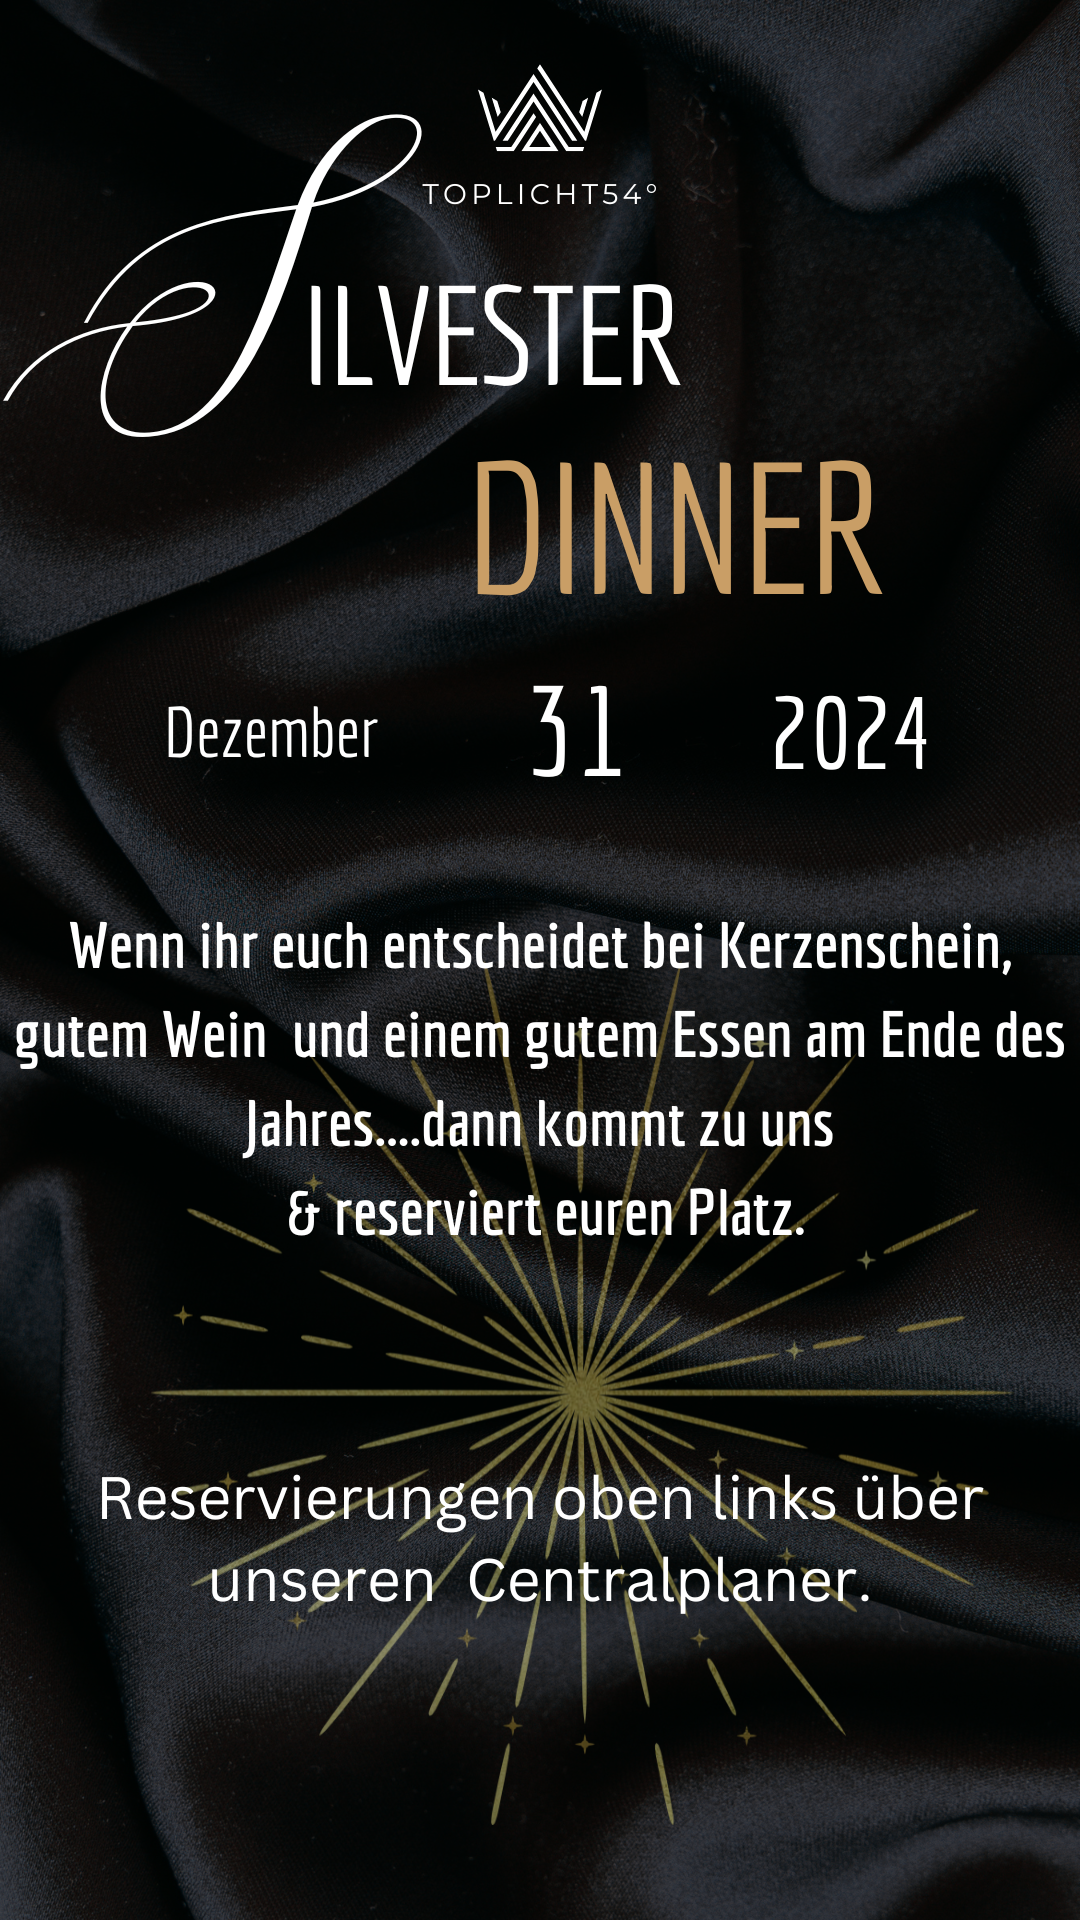 Silvester Dinner 2024